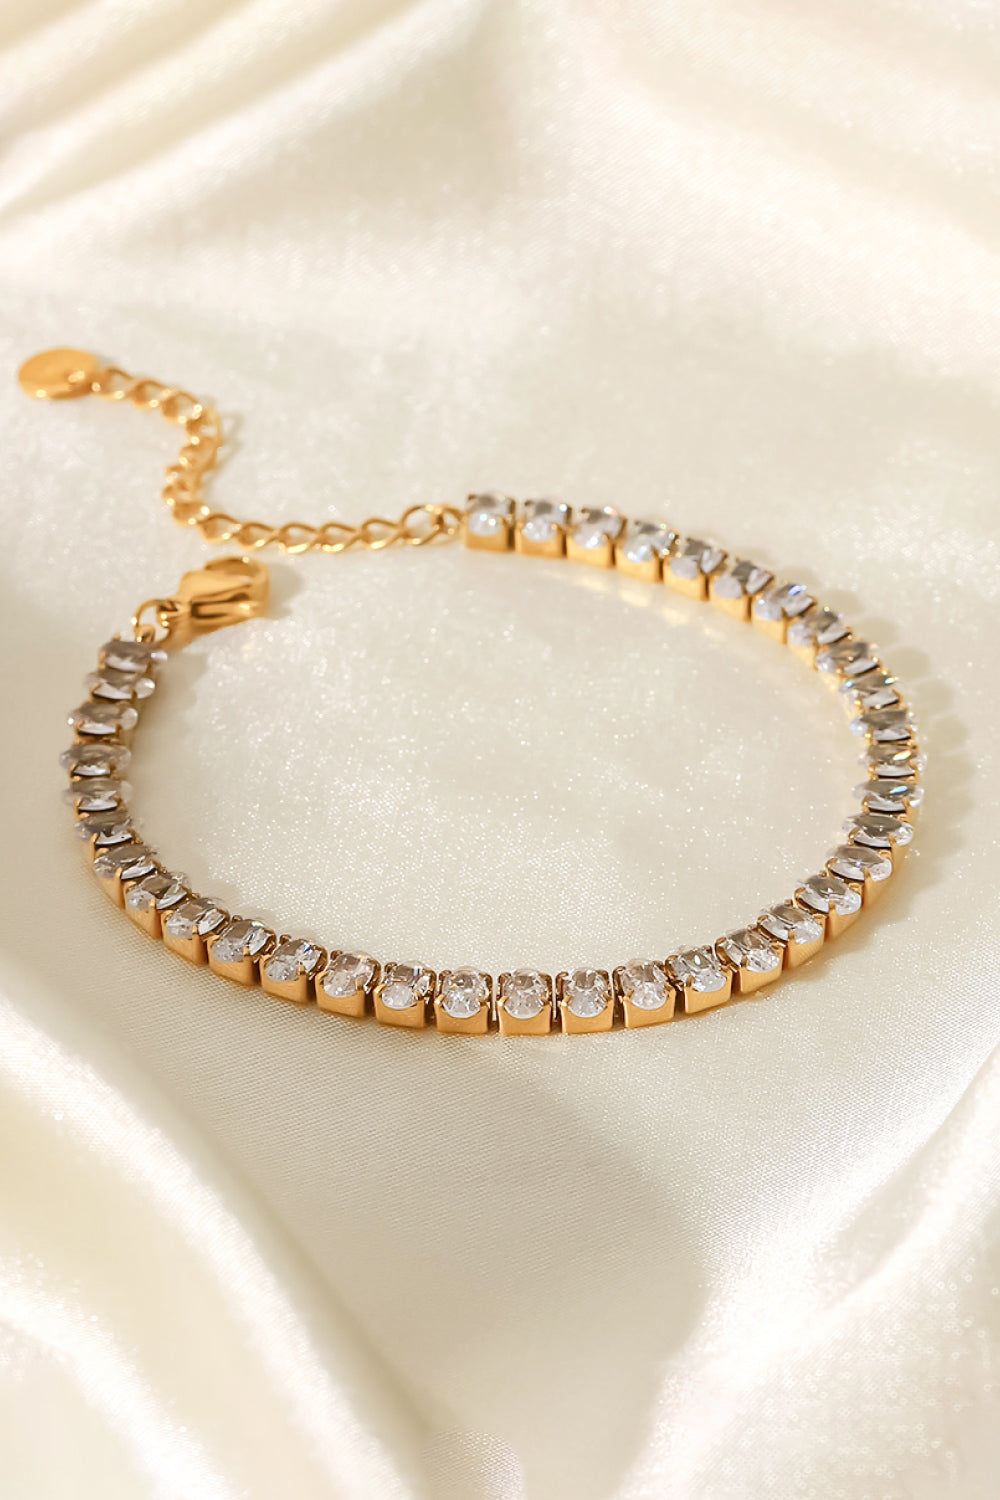 Inlaid Zircon 18K Gold Plated Bracelet - Gold / One Size - Women’s Jewelry - Bracelets - 4 - 2024